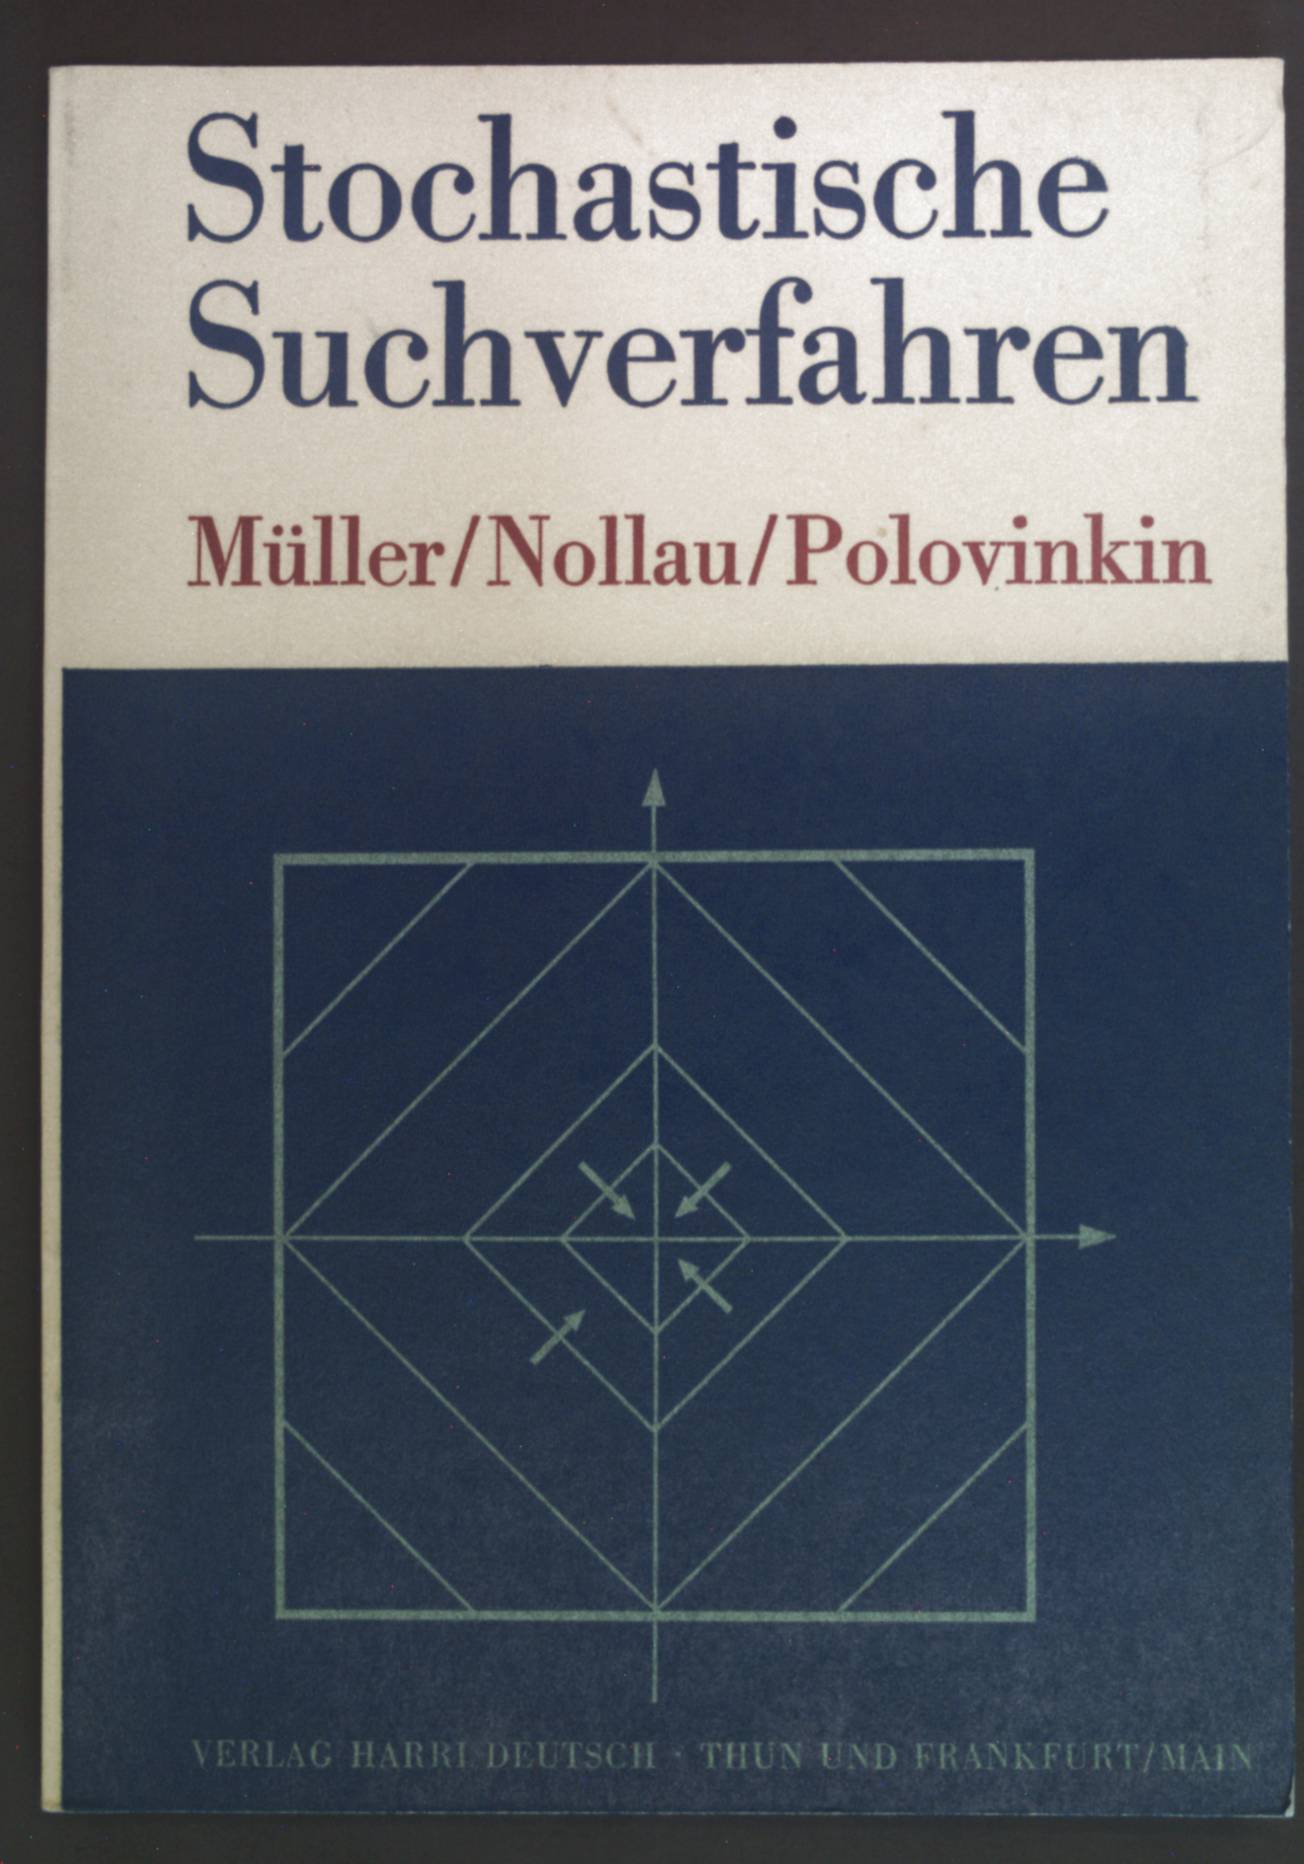 Stochastische Suchverfahren. Mathematik für Ingenieure - Müller, Paul Heinz, Volker Nollau und Aleksandr I. Polovinkin